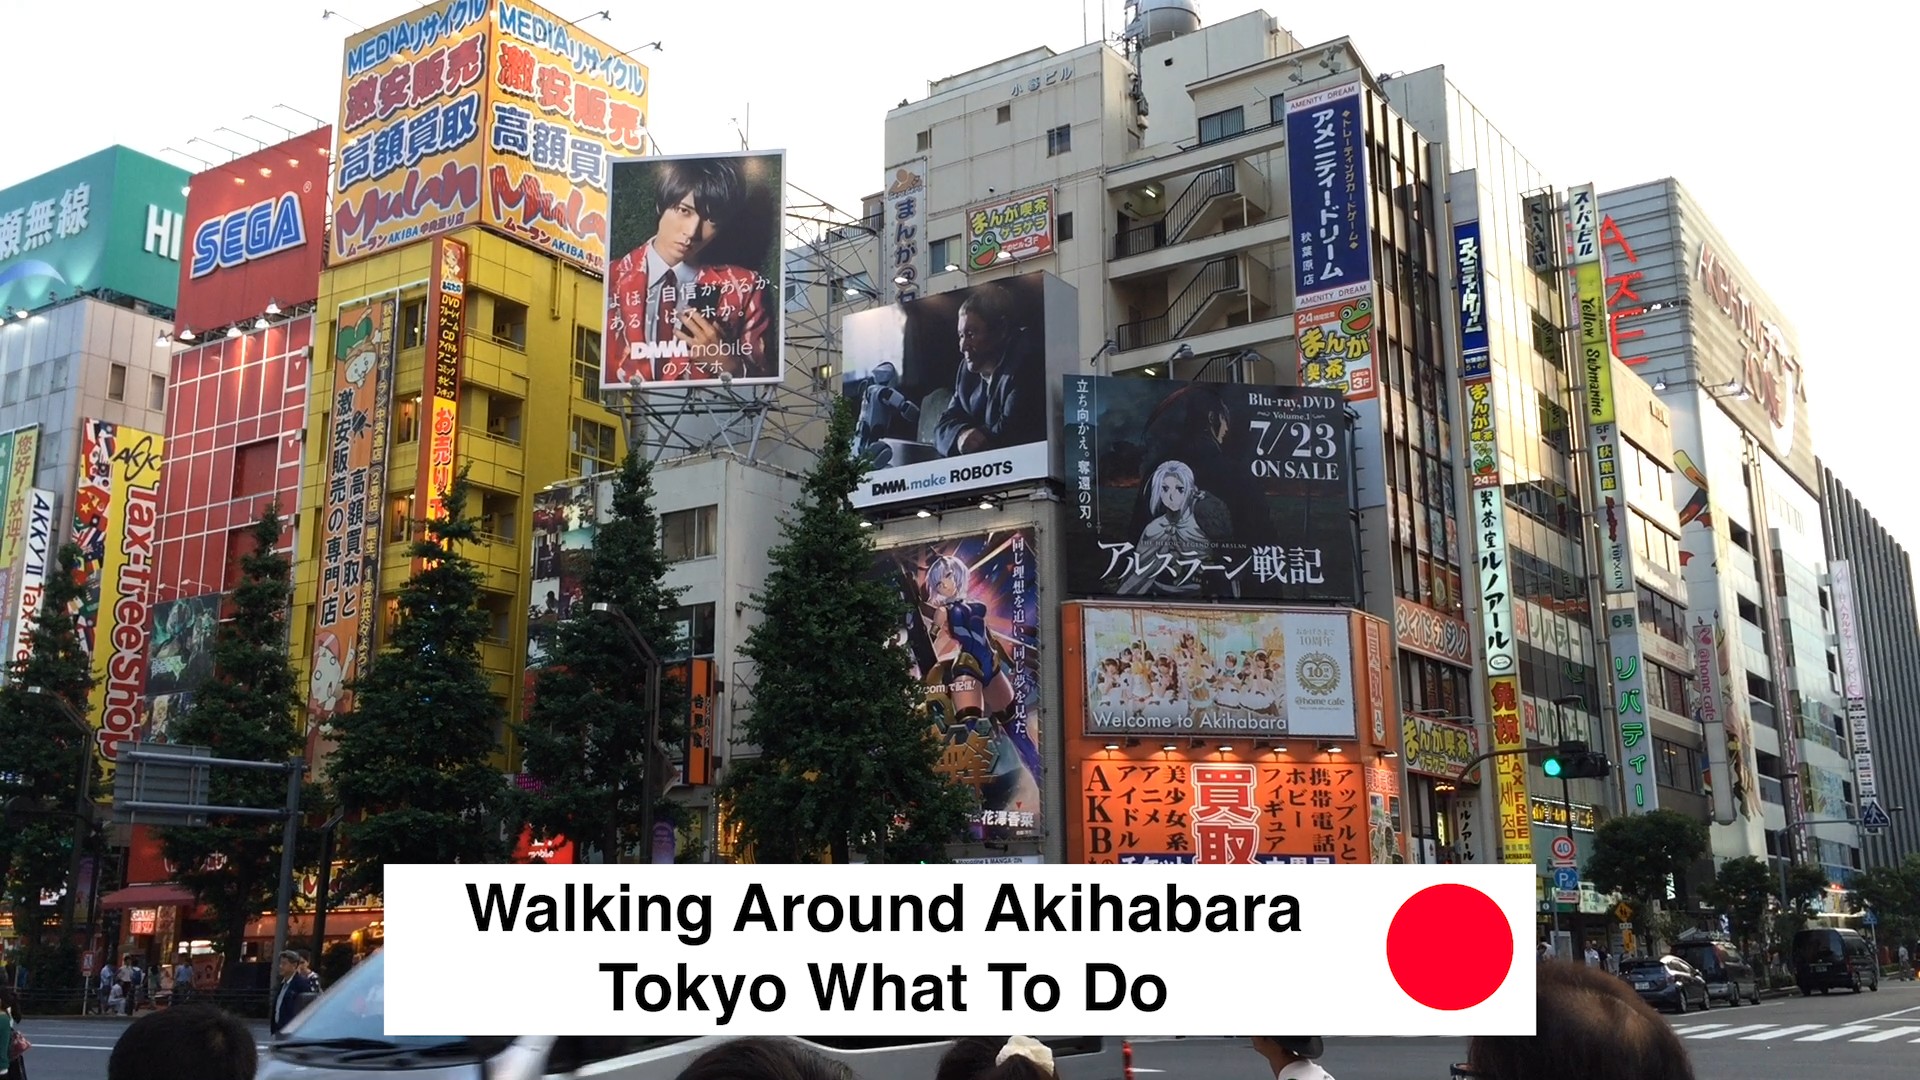 Walking Around Akihabara Tokyo What To Do - Walking Around Akihabara Tokyo What To Do 2018 - Loot Anime Discount Code 2018 🇯🇵 🏙 📦